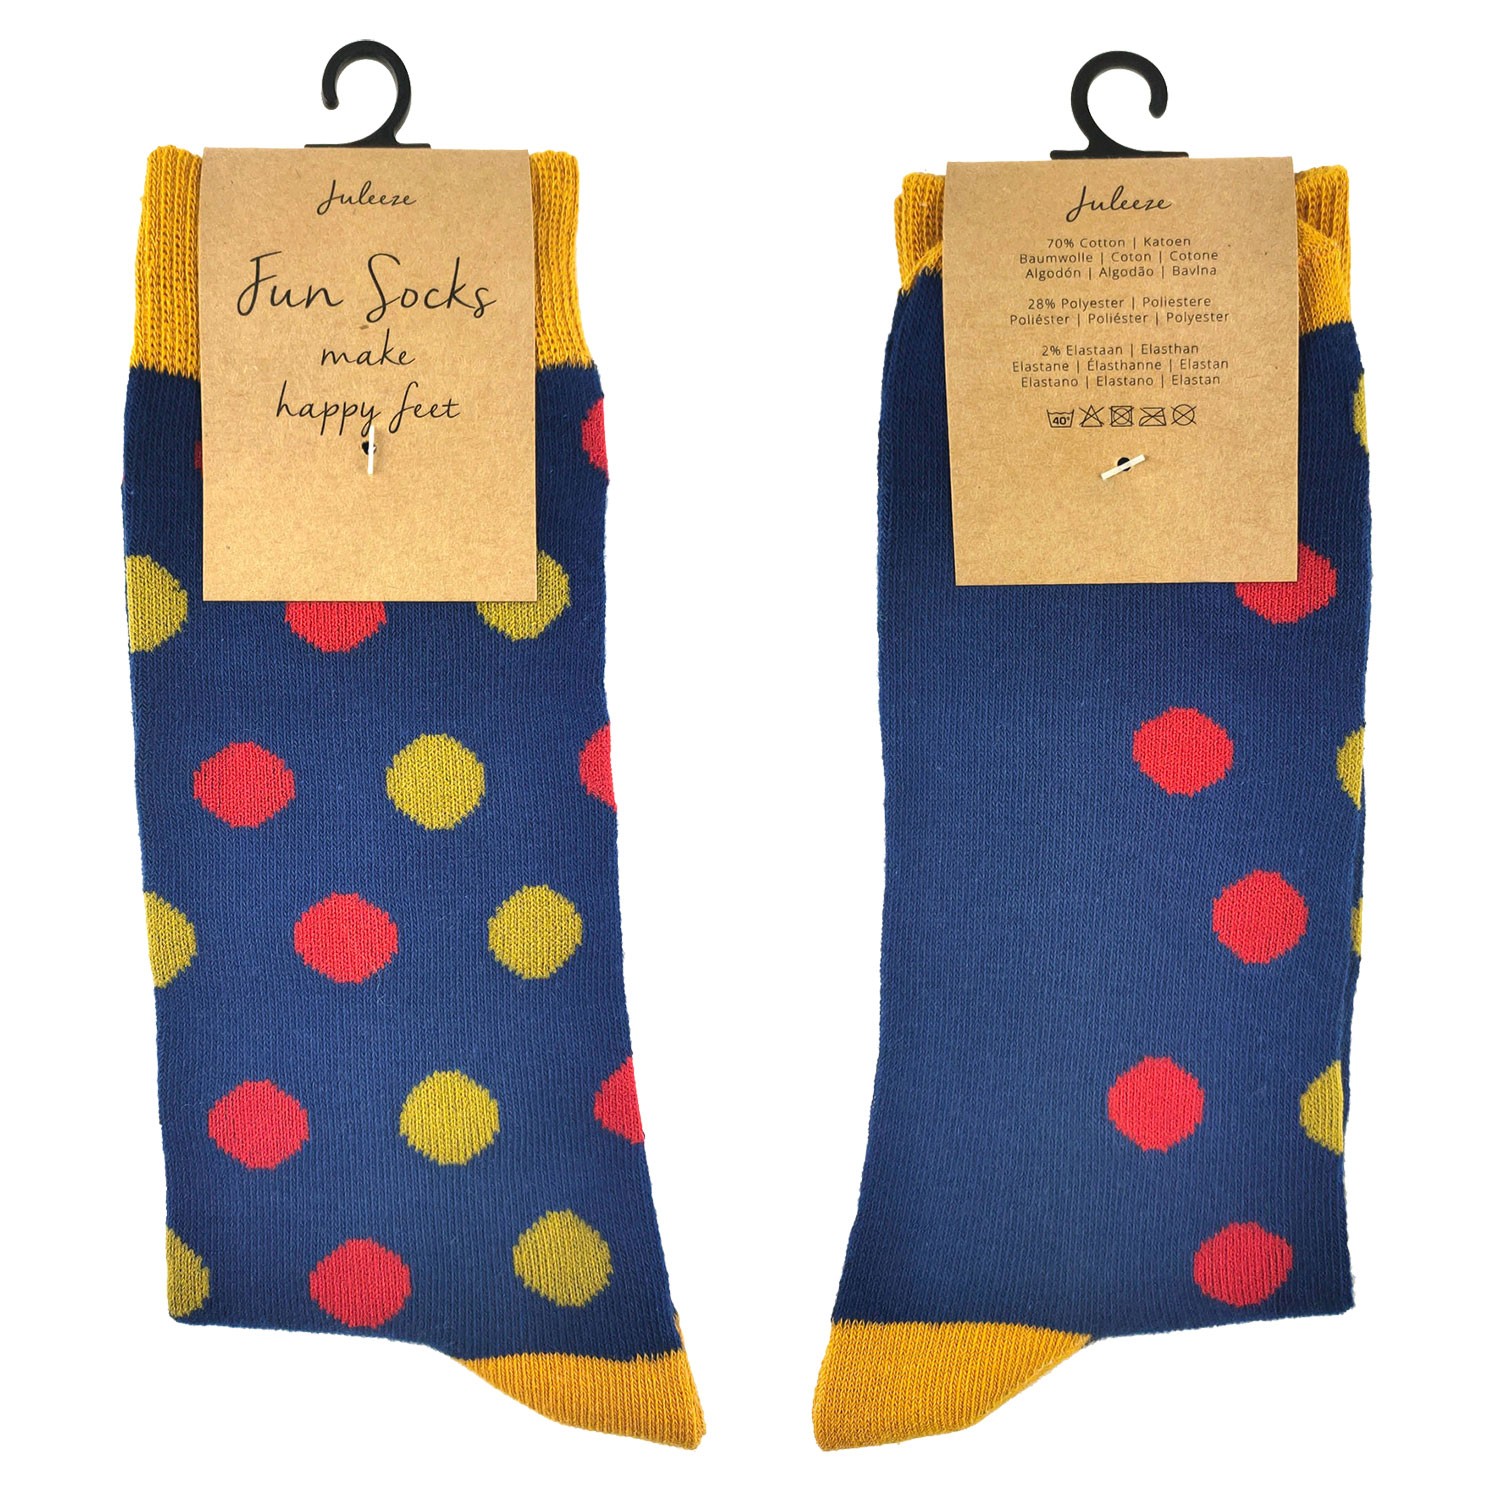 Veselé modré ponožky s puntíky - 39-41 JZSK0018M